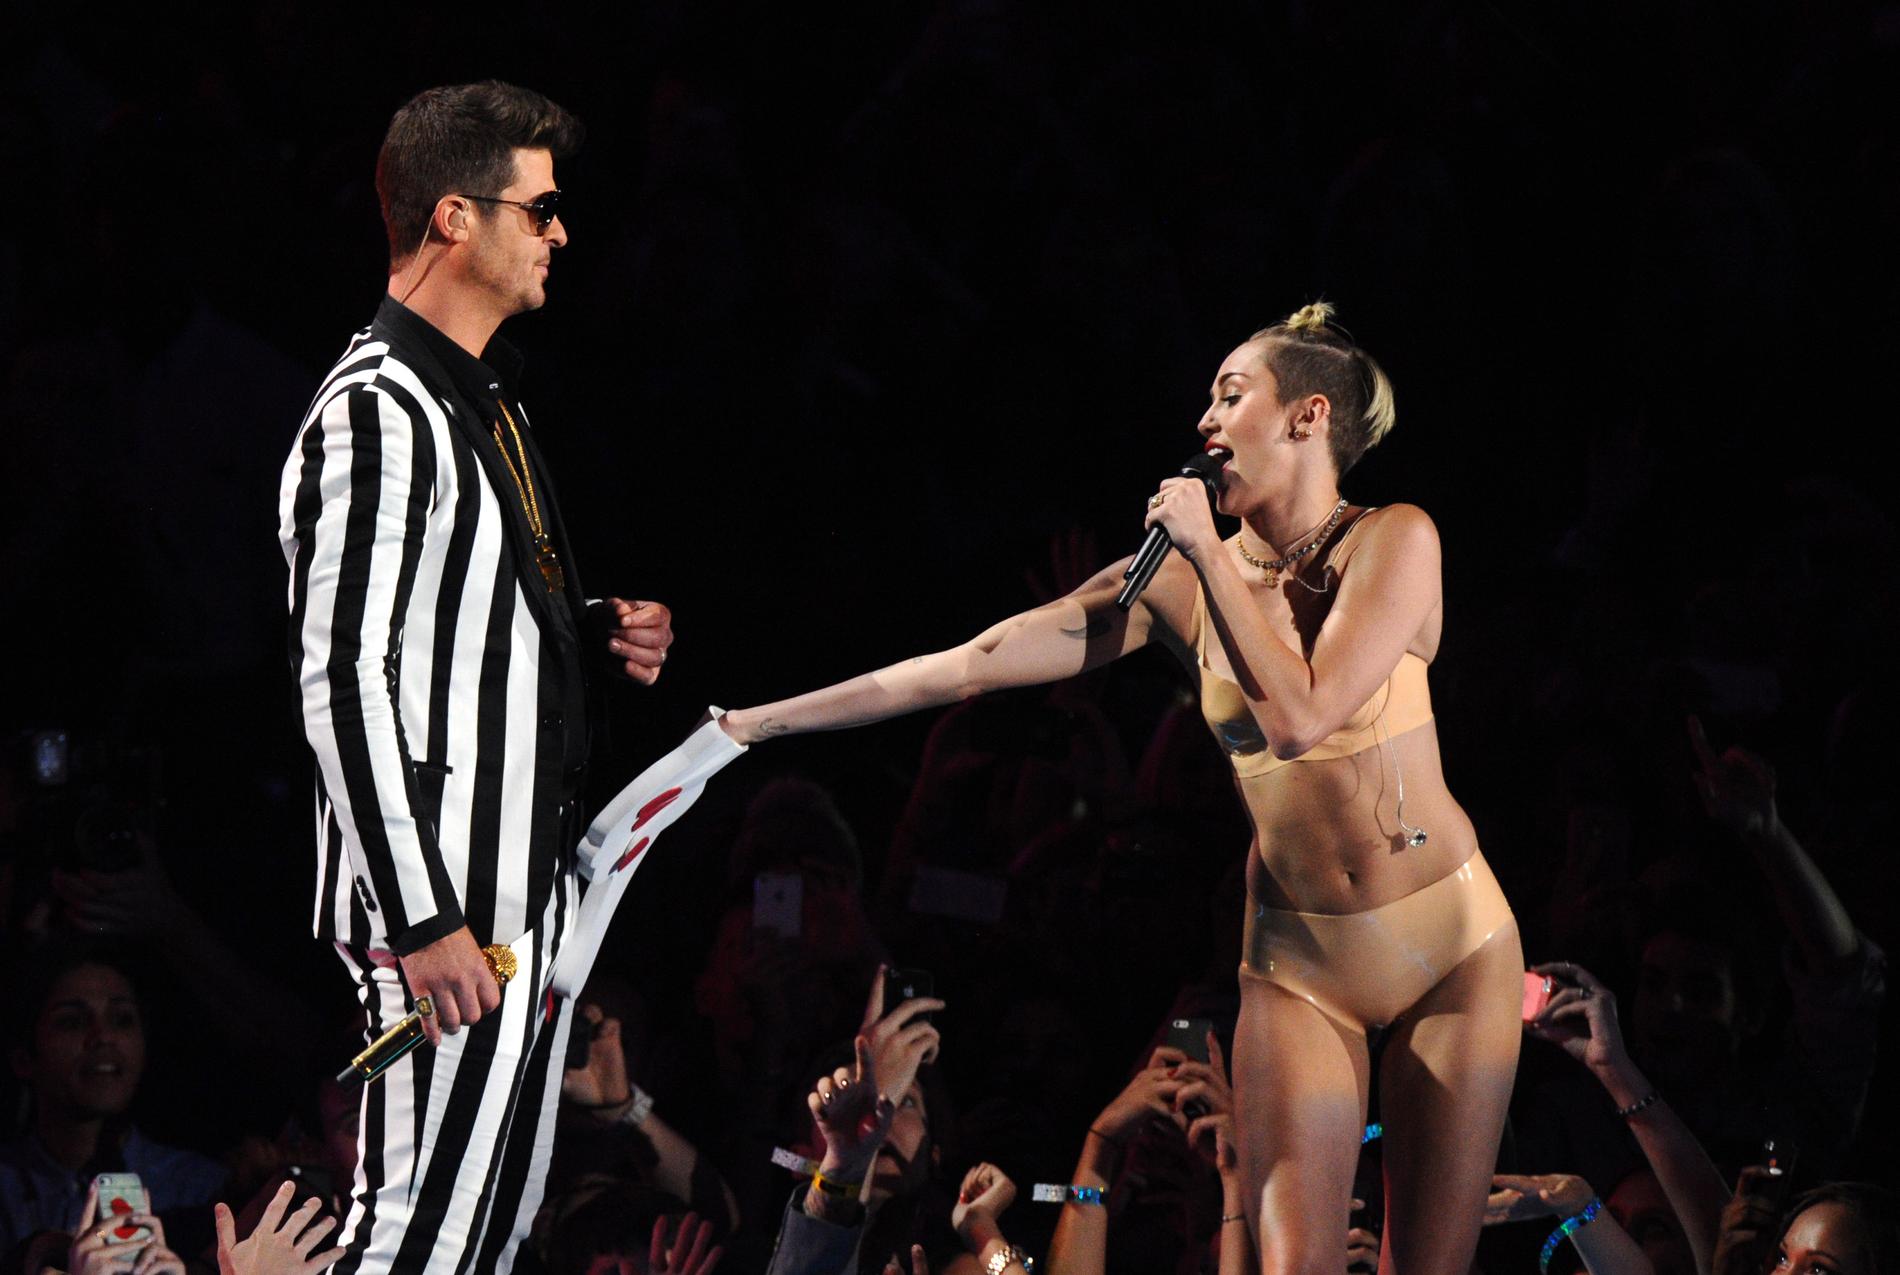 Mileys MTV-framträdande tillsammans med Robin Thicke har väckt mycket känslor.